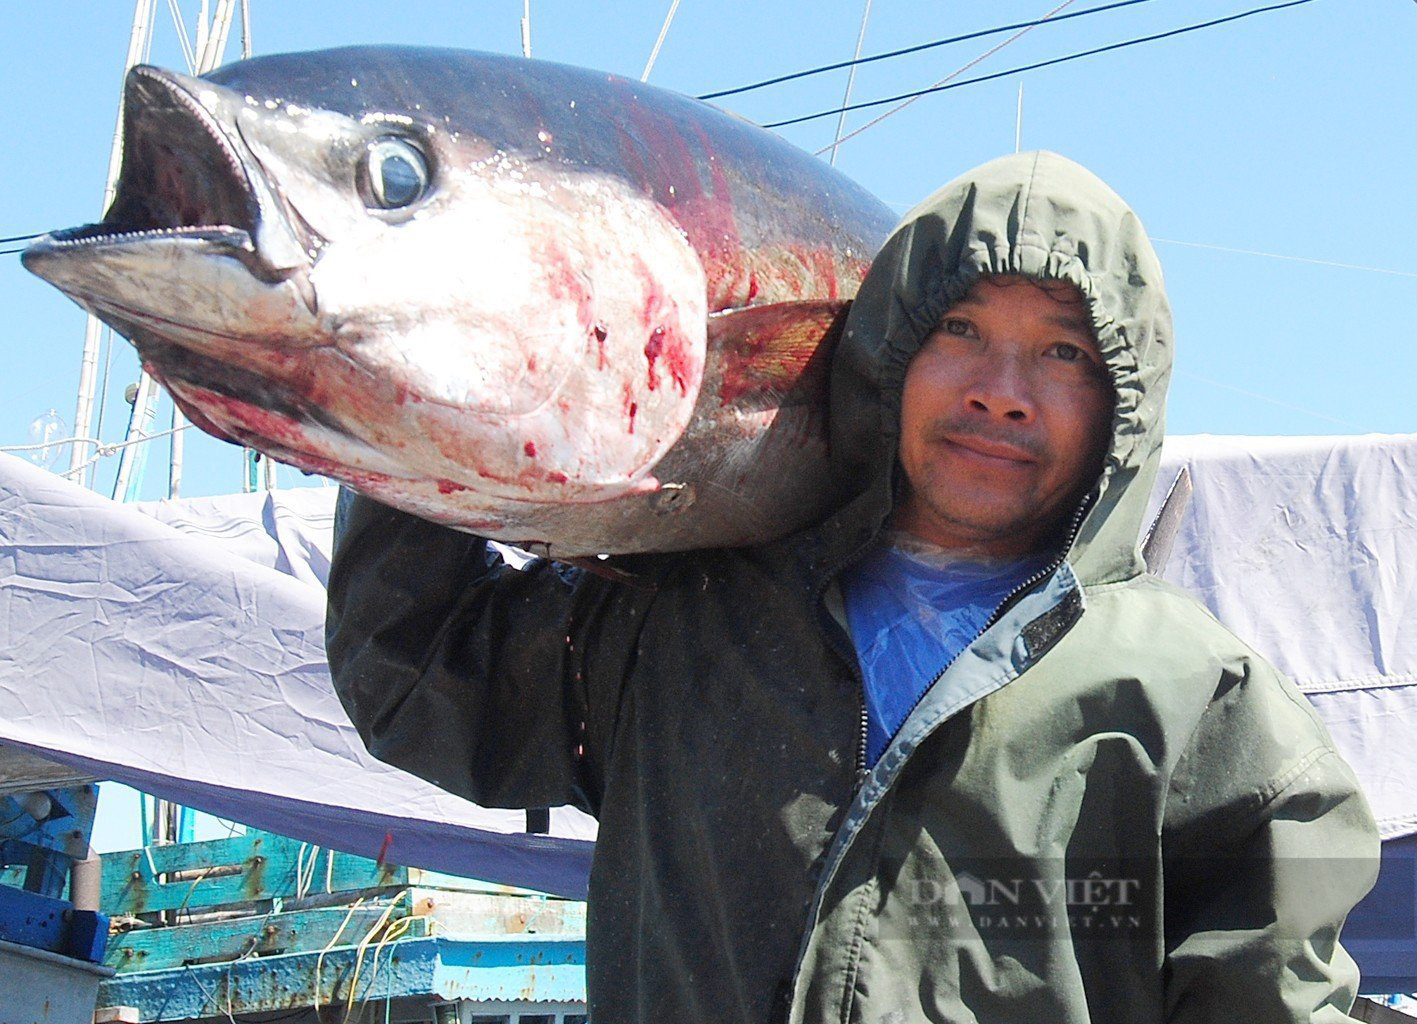 Ngư dân Bình Định bảo quản cá ngừ 'khủng' bằng cách nào, để giúp cá tươi rói, đảm bảo chất lượng? - Ảnh 2.